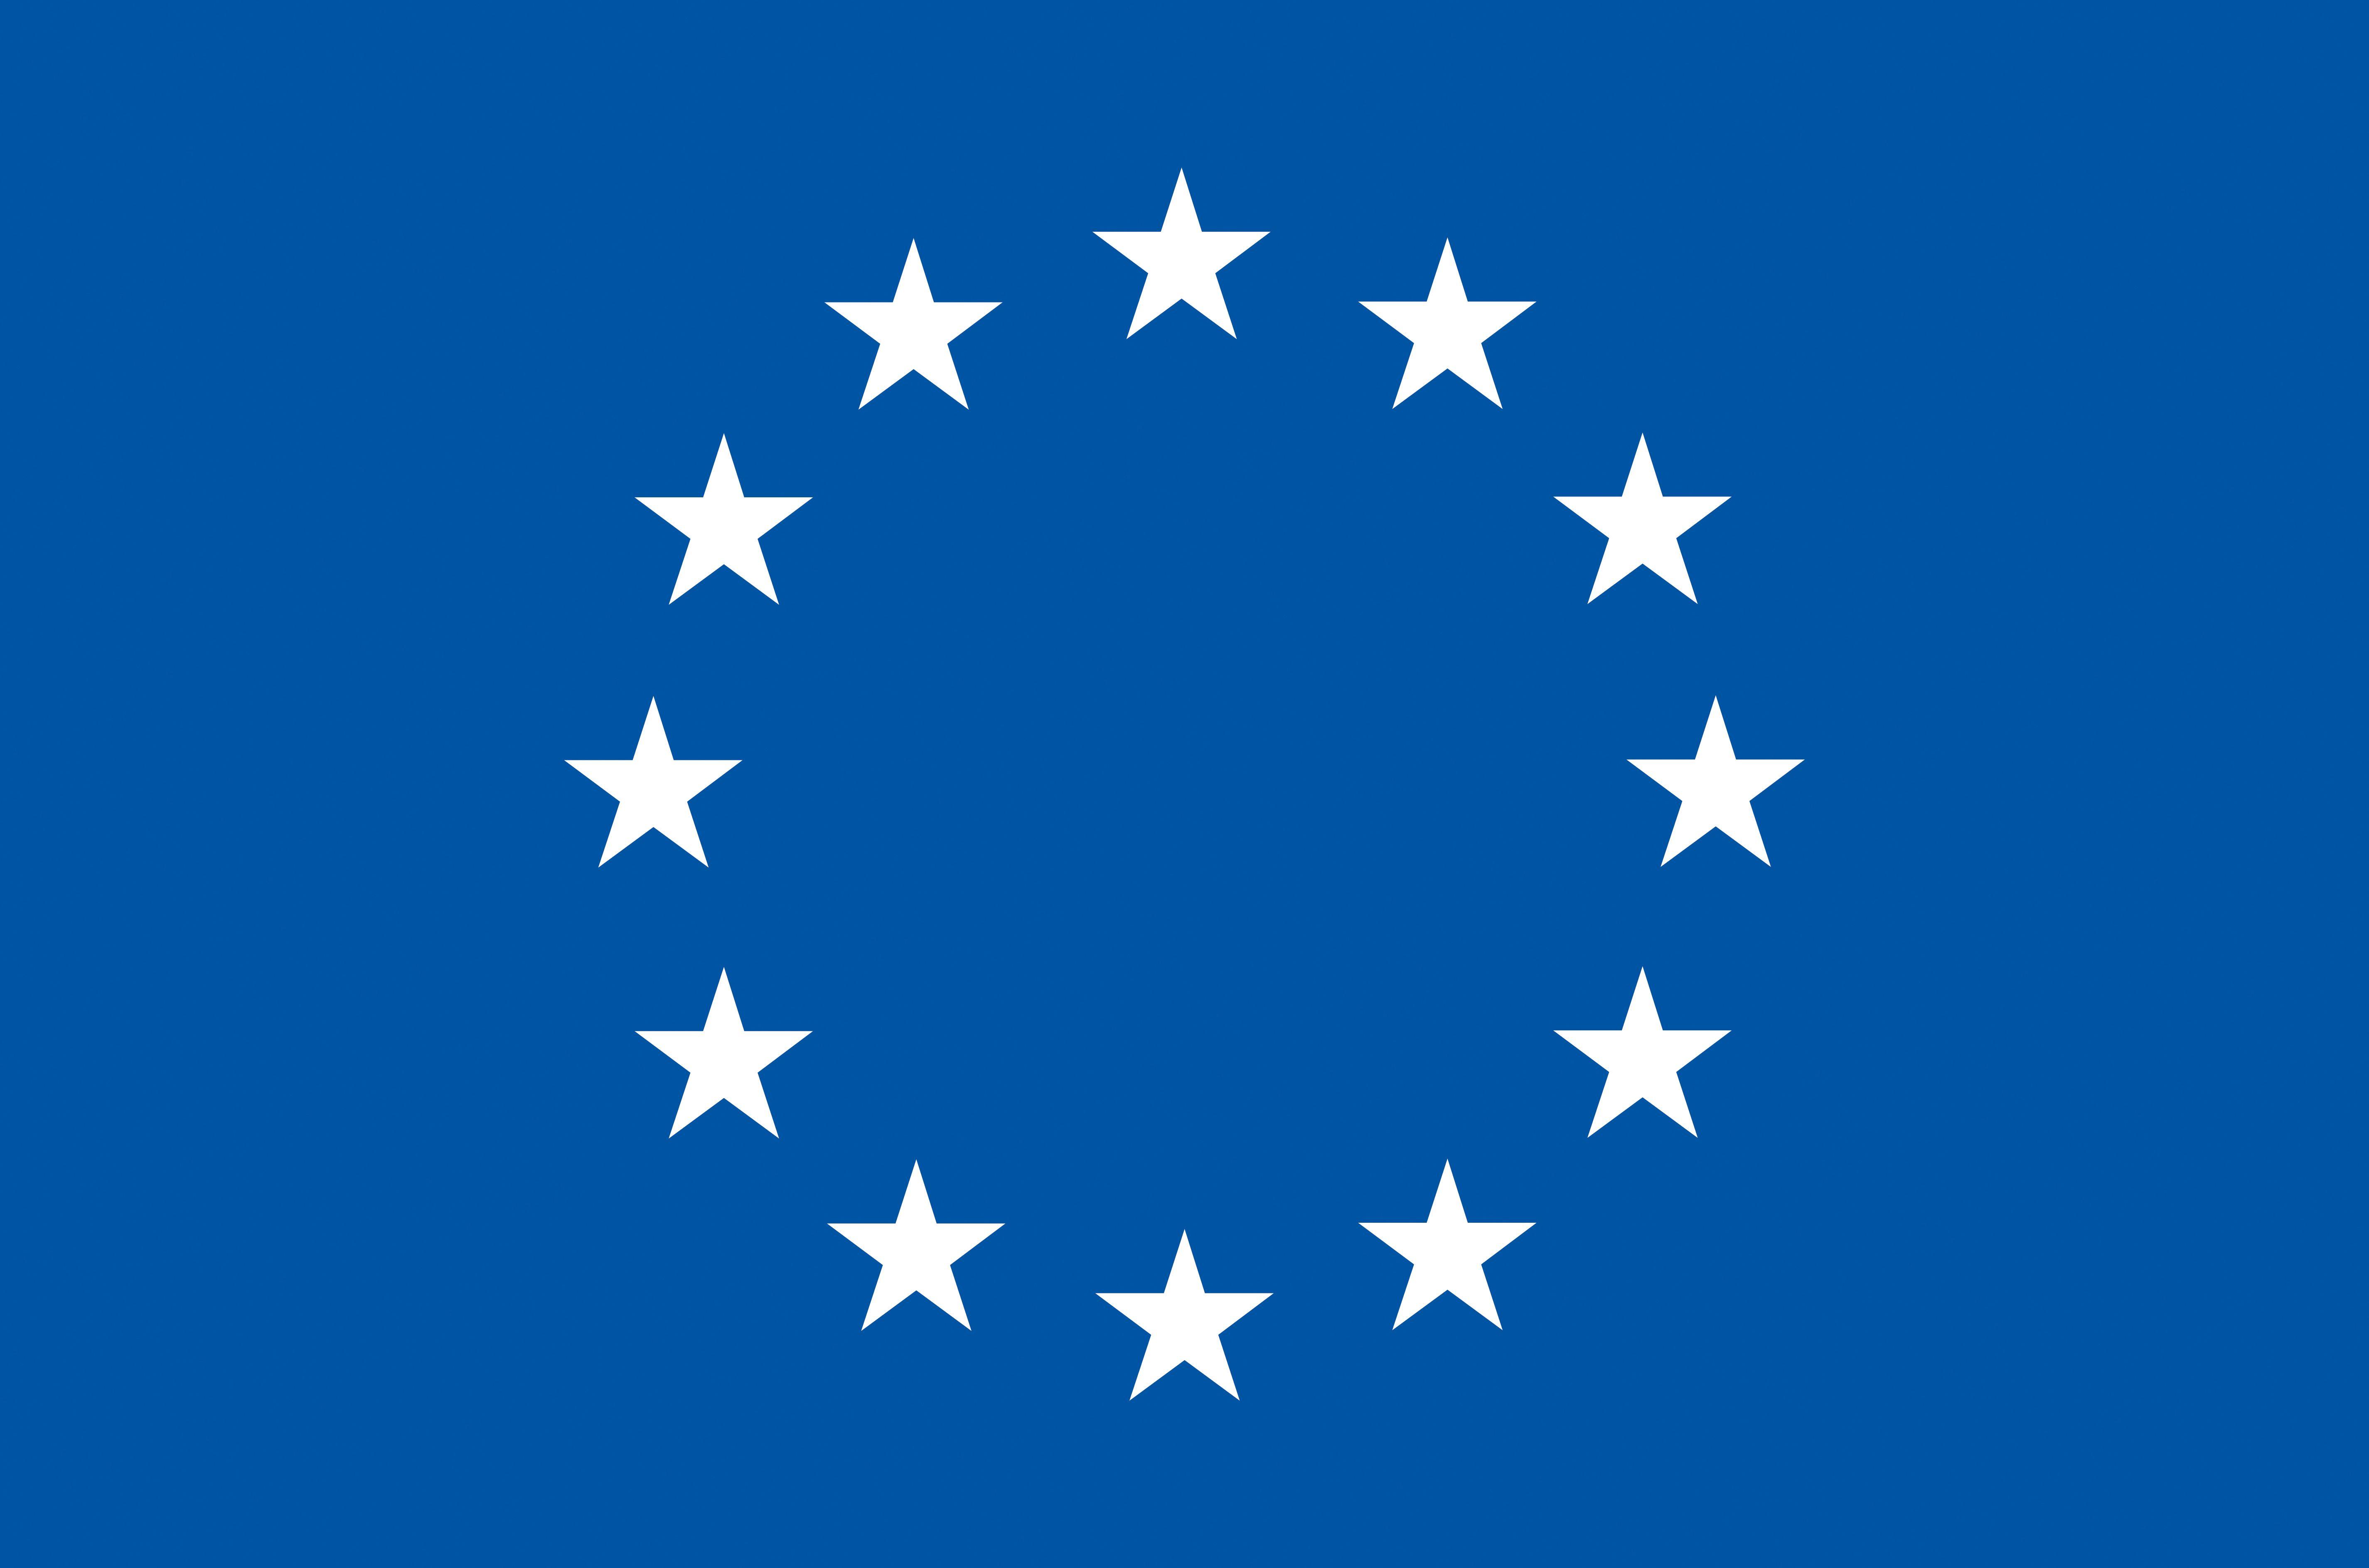 Blue and White Star Logo - The European flag | European Union